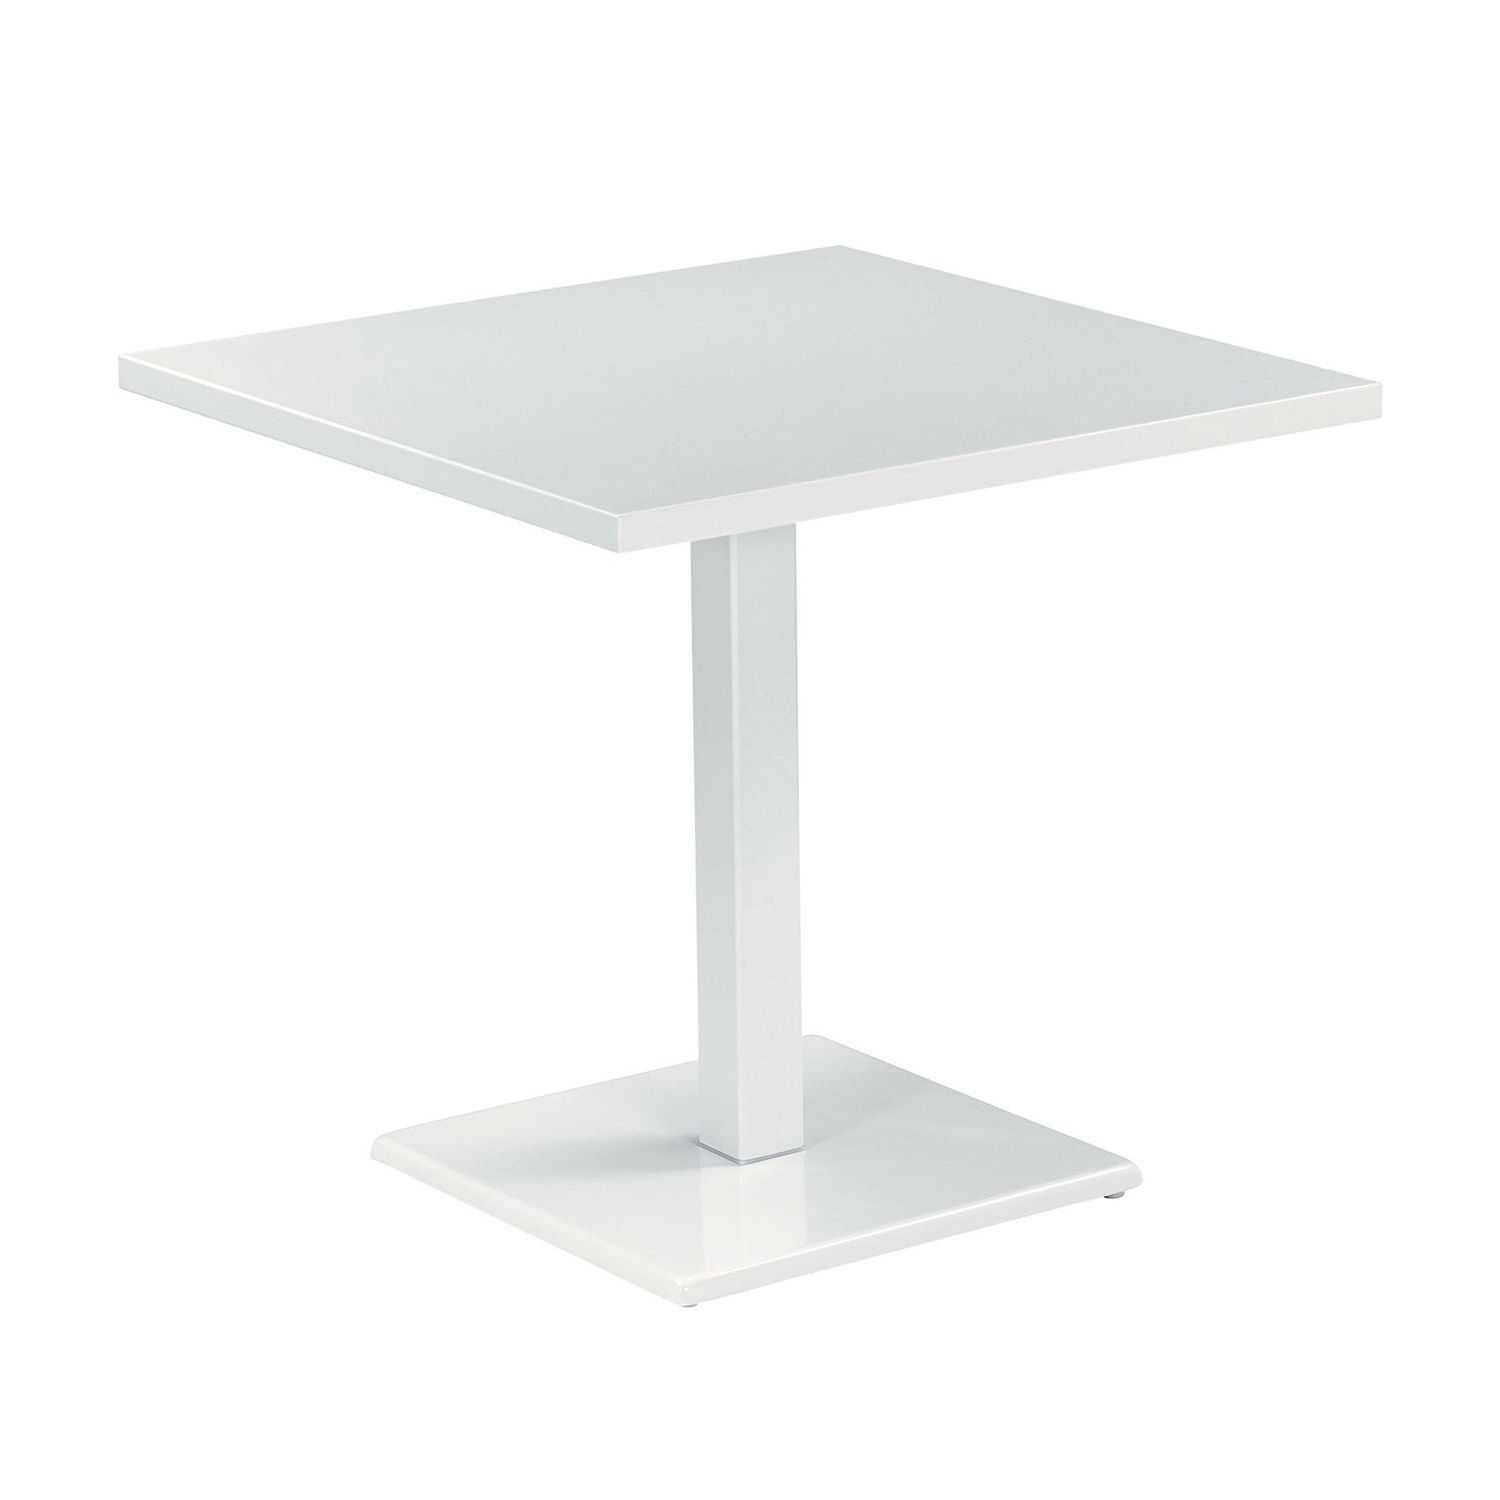 Emu designové zahradní stoly Round Square Table (šířka 60 cm) - DESIGNPROPAGANDA